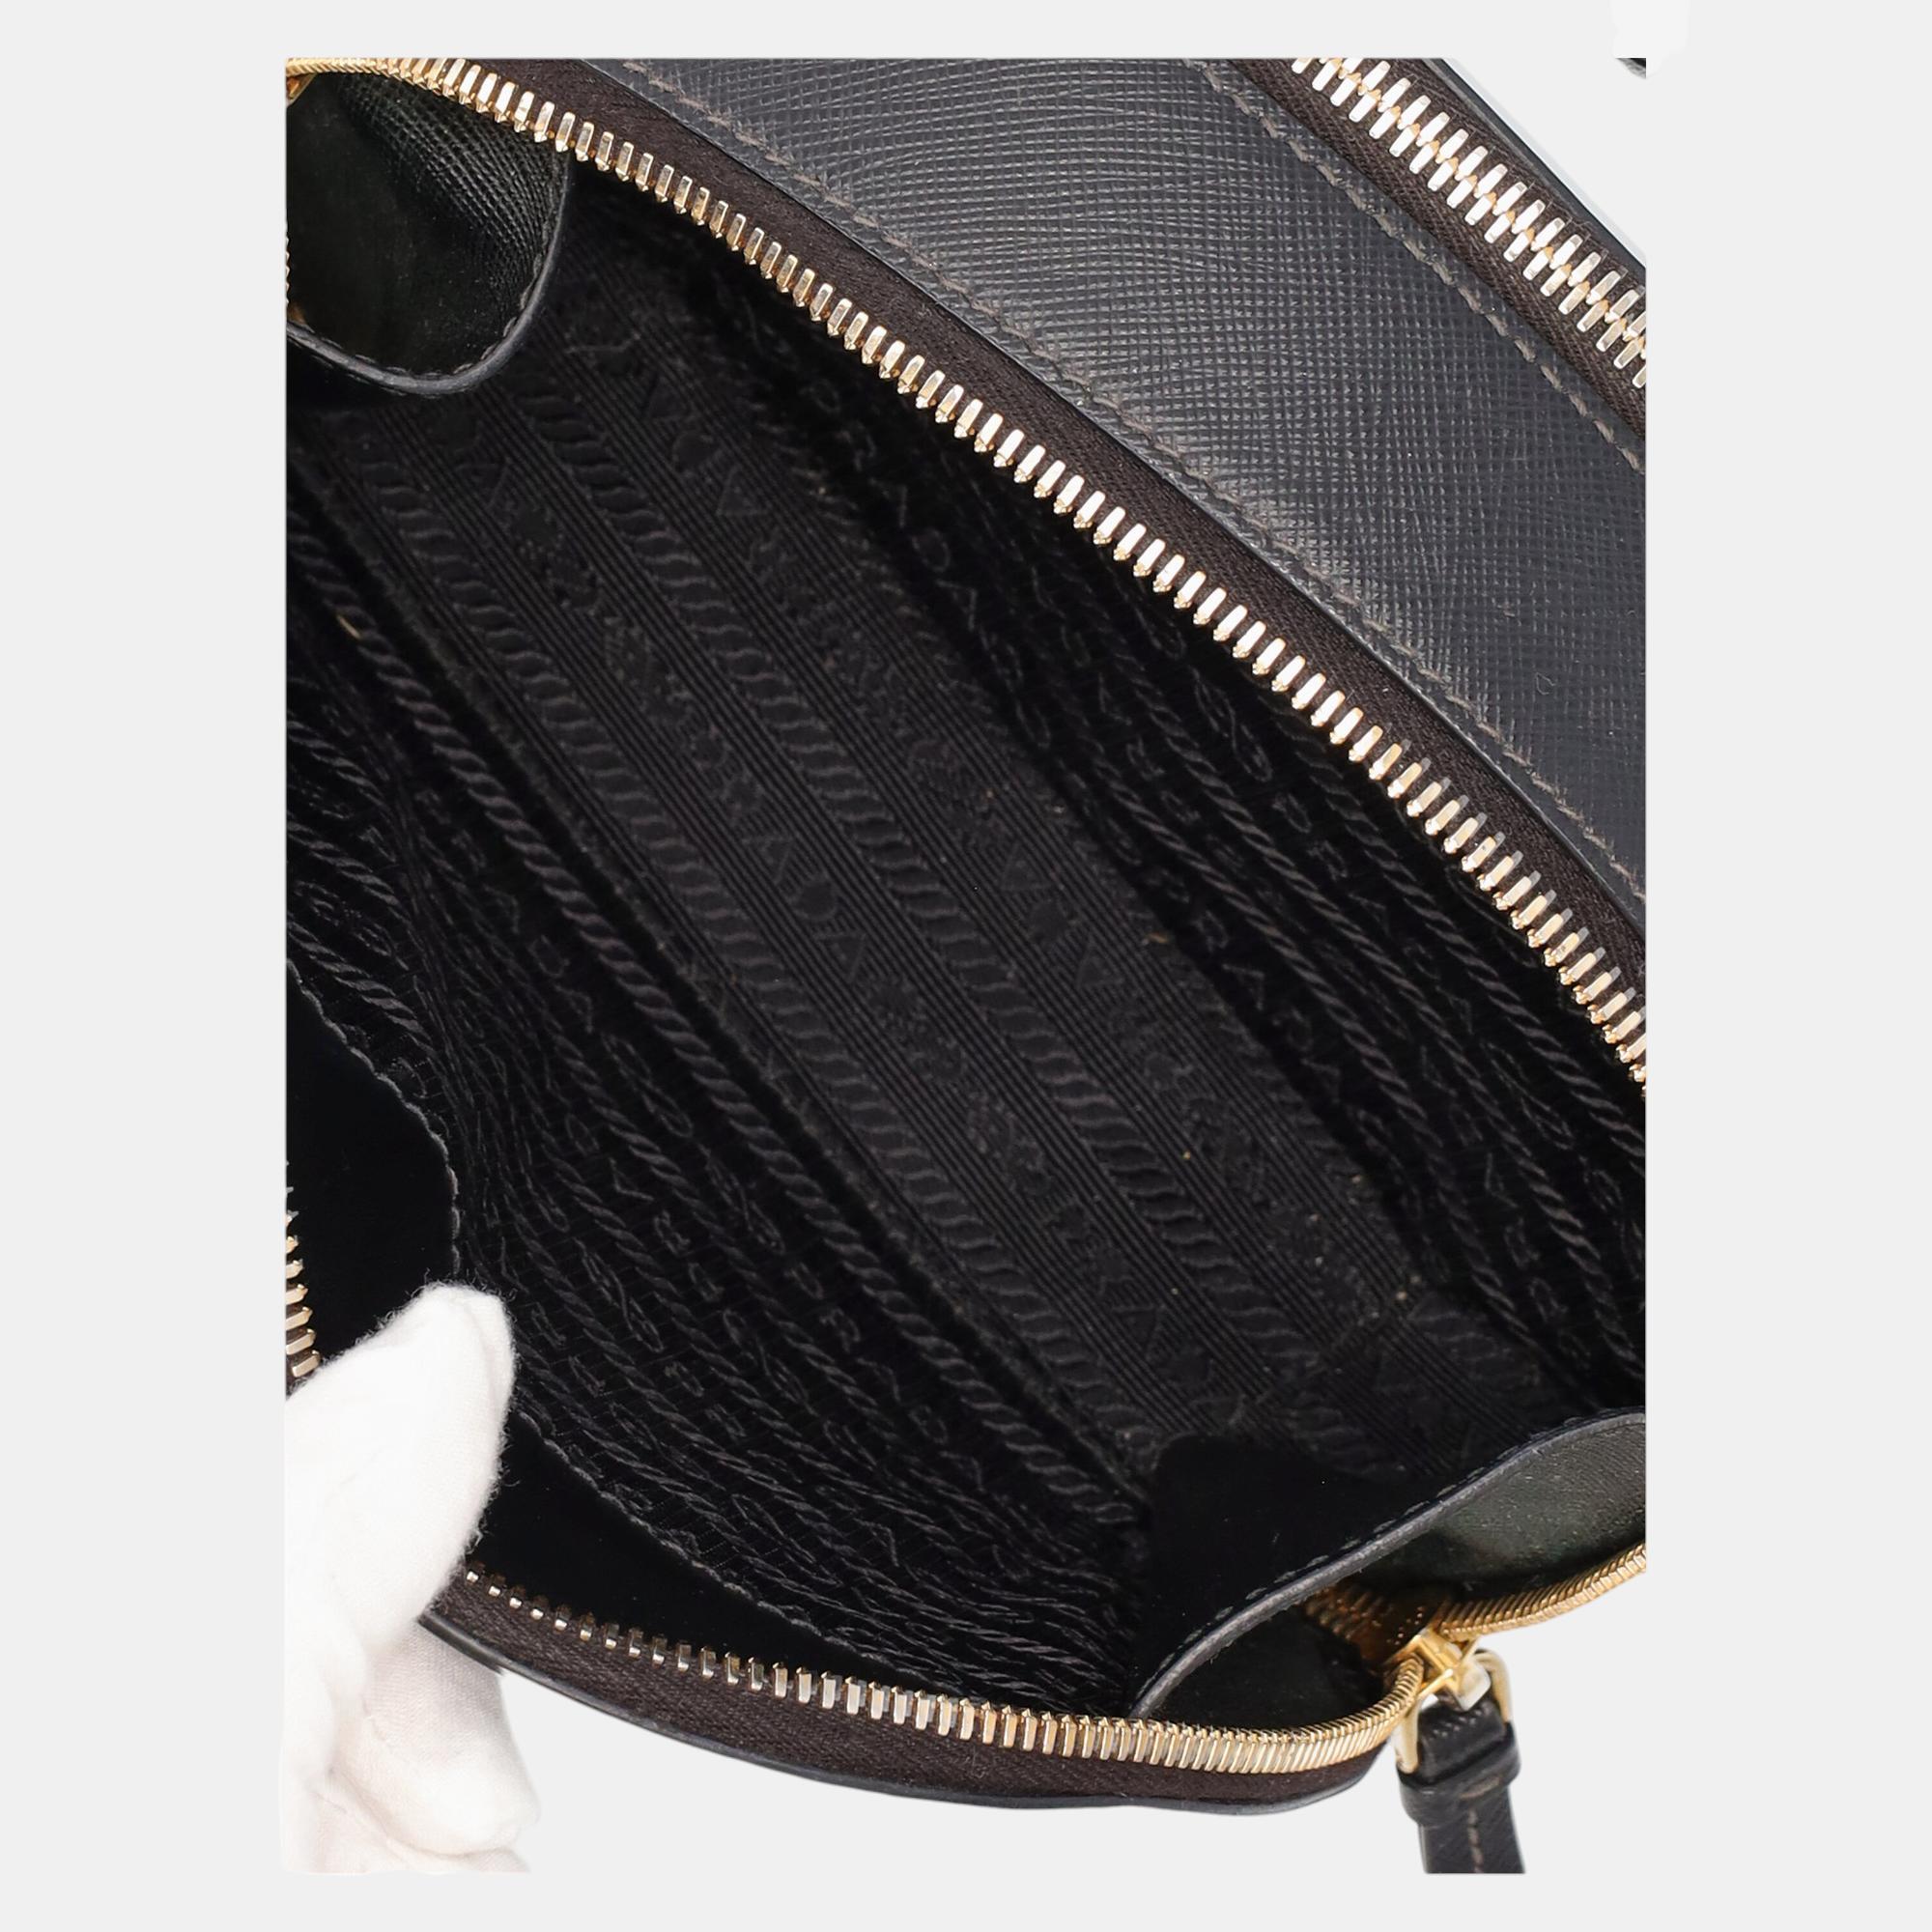 Prada  Women's Leather Clutch Bag - Black - One Size